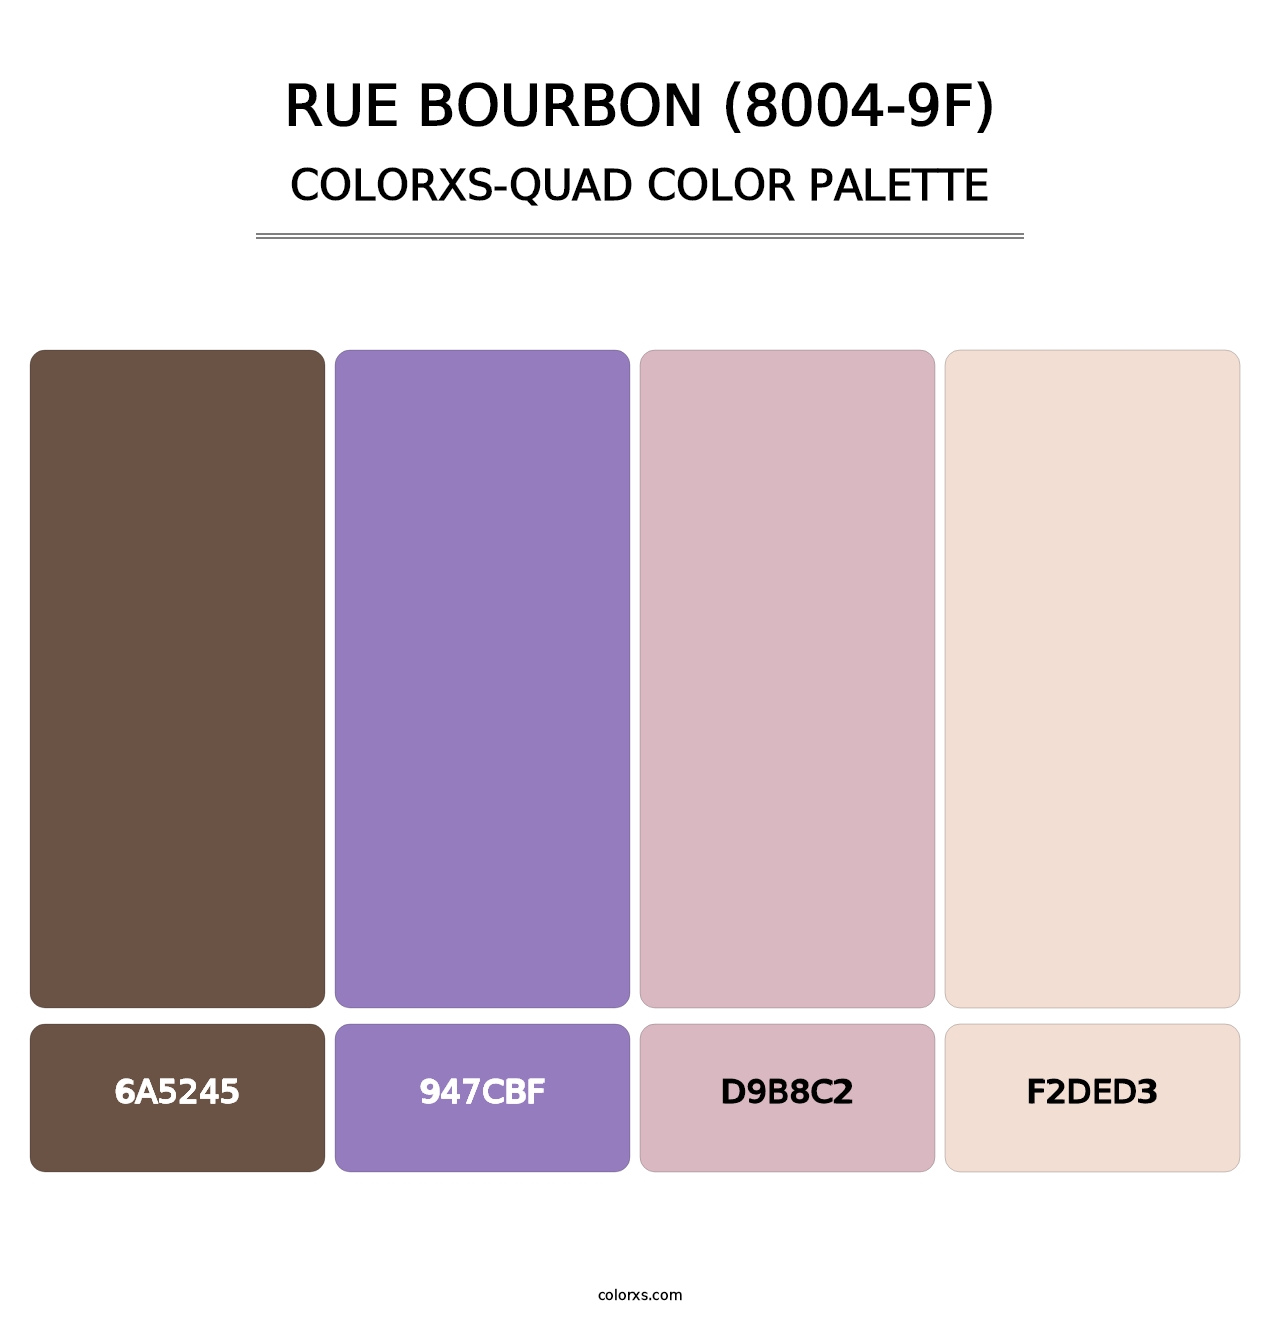 Rue Bourbon (8004-9F) - Colorxs Quad Palette